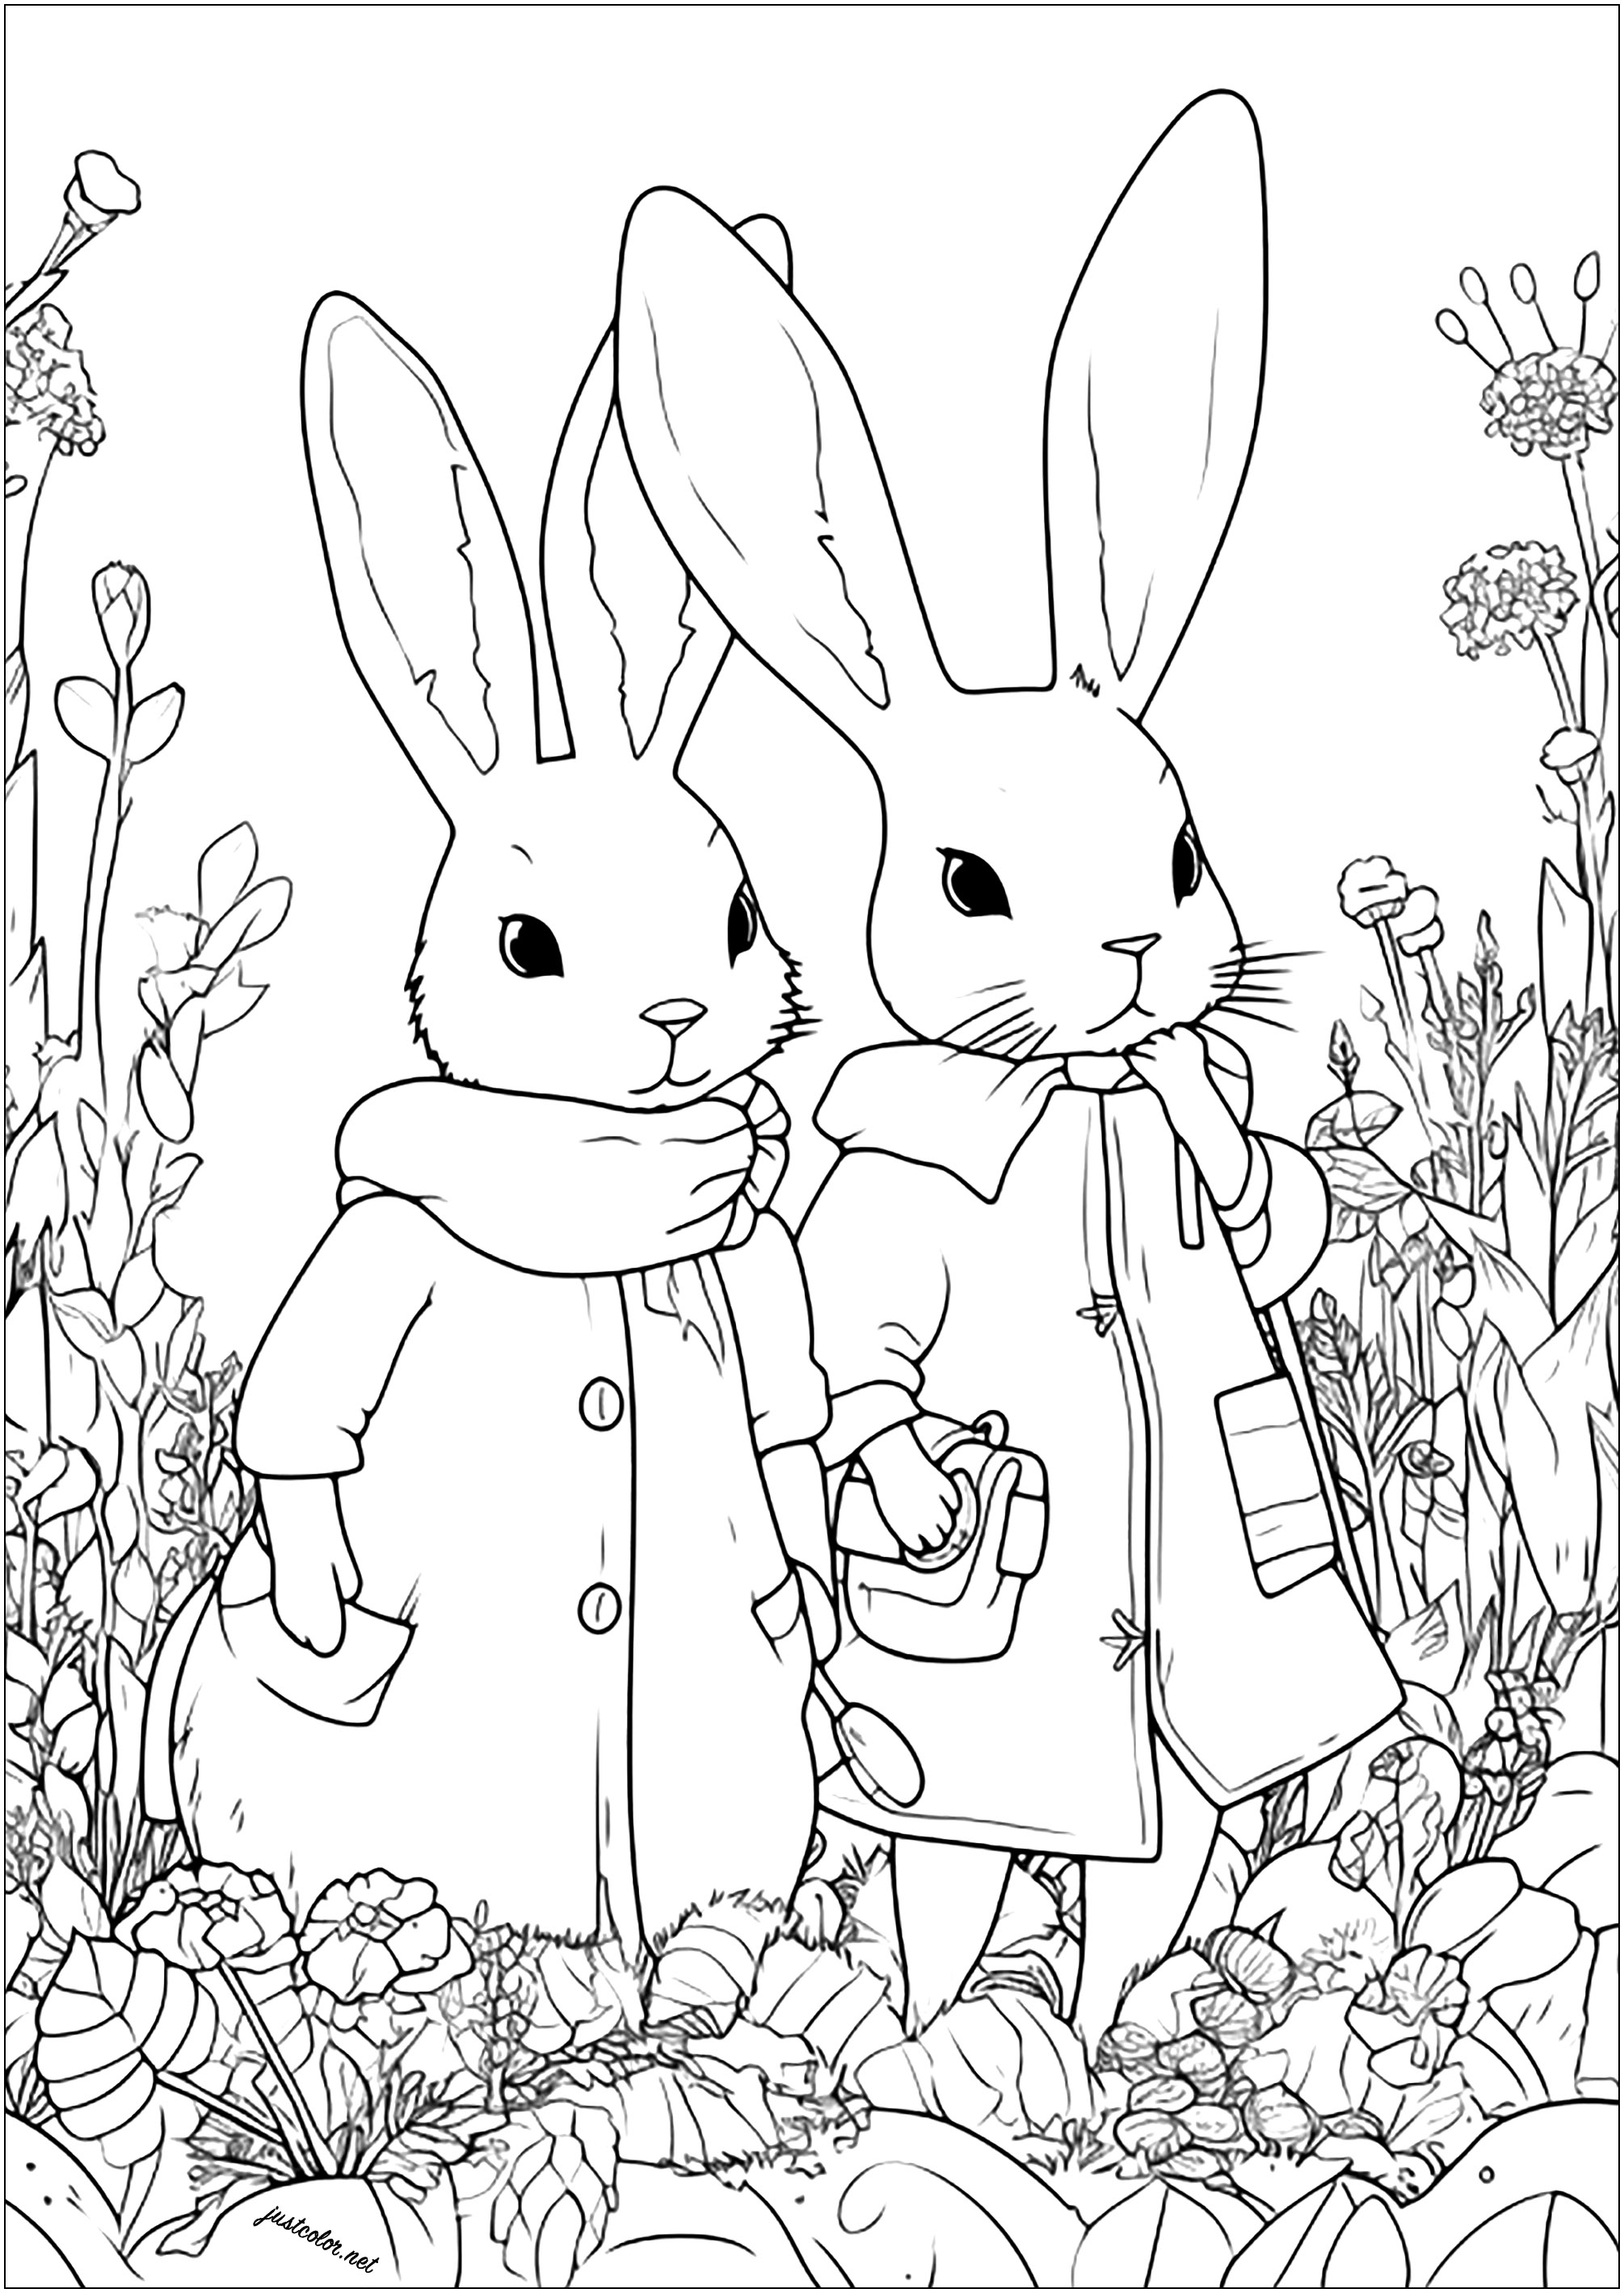 Due conigli avventurosi in un campo di fiori. Conigli disegnati con uno stile unico, pronti a partire per un'avventura ...